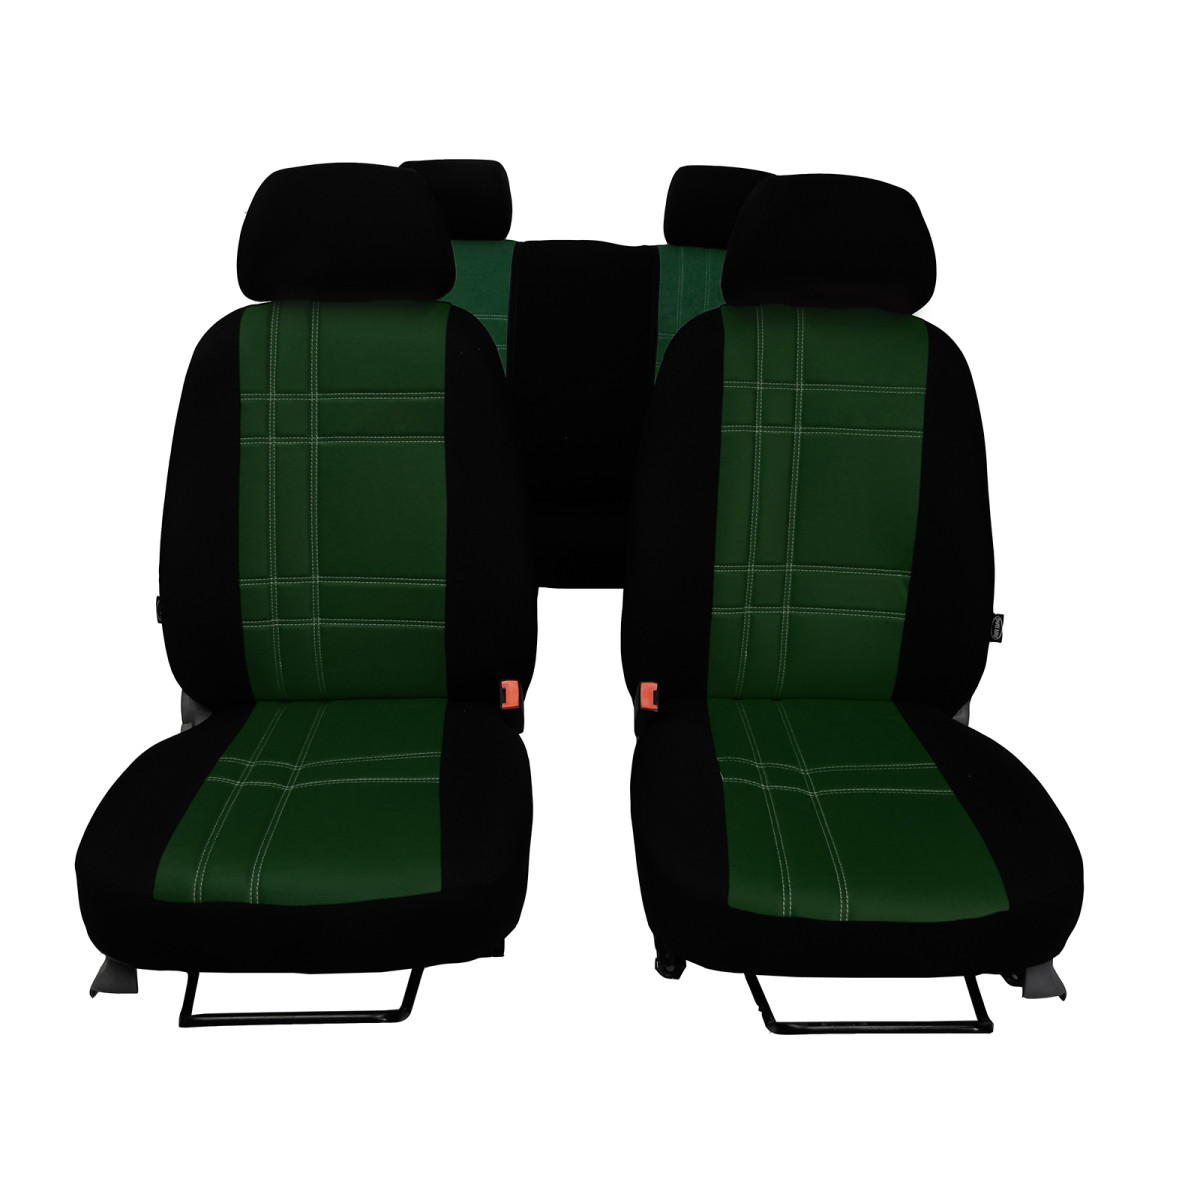 EXCLUSIVE sitzbezüge (öko-leder, alcantara) Volkswagen T5 (2 sitzer)